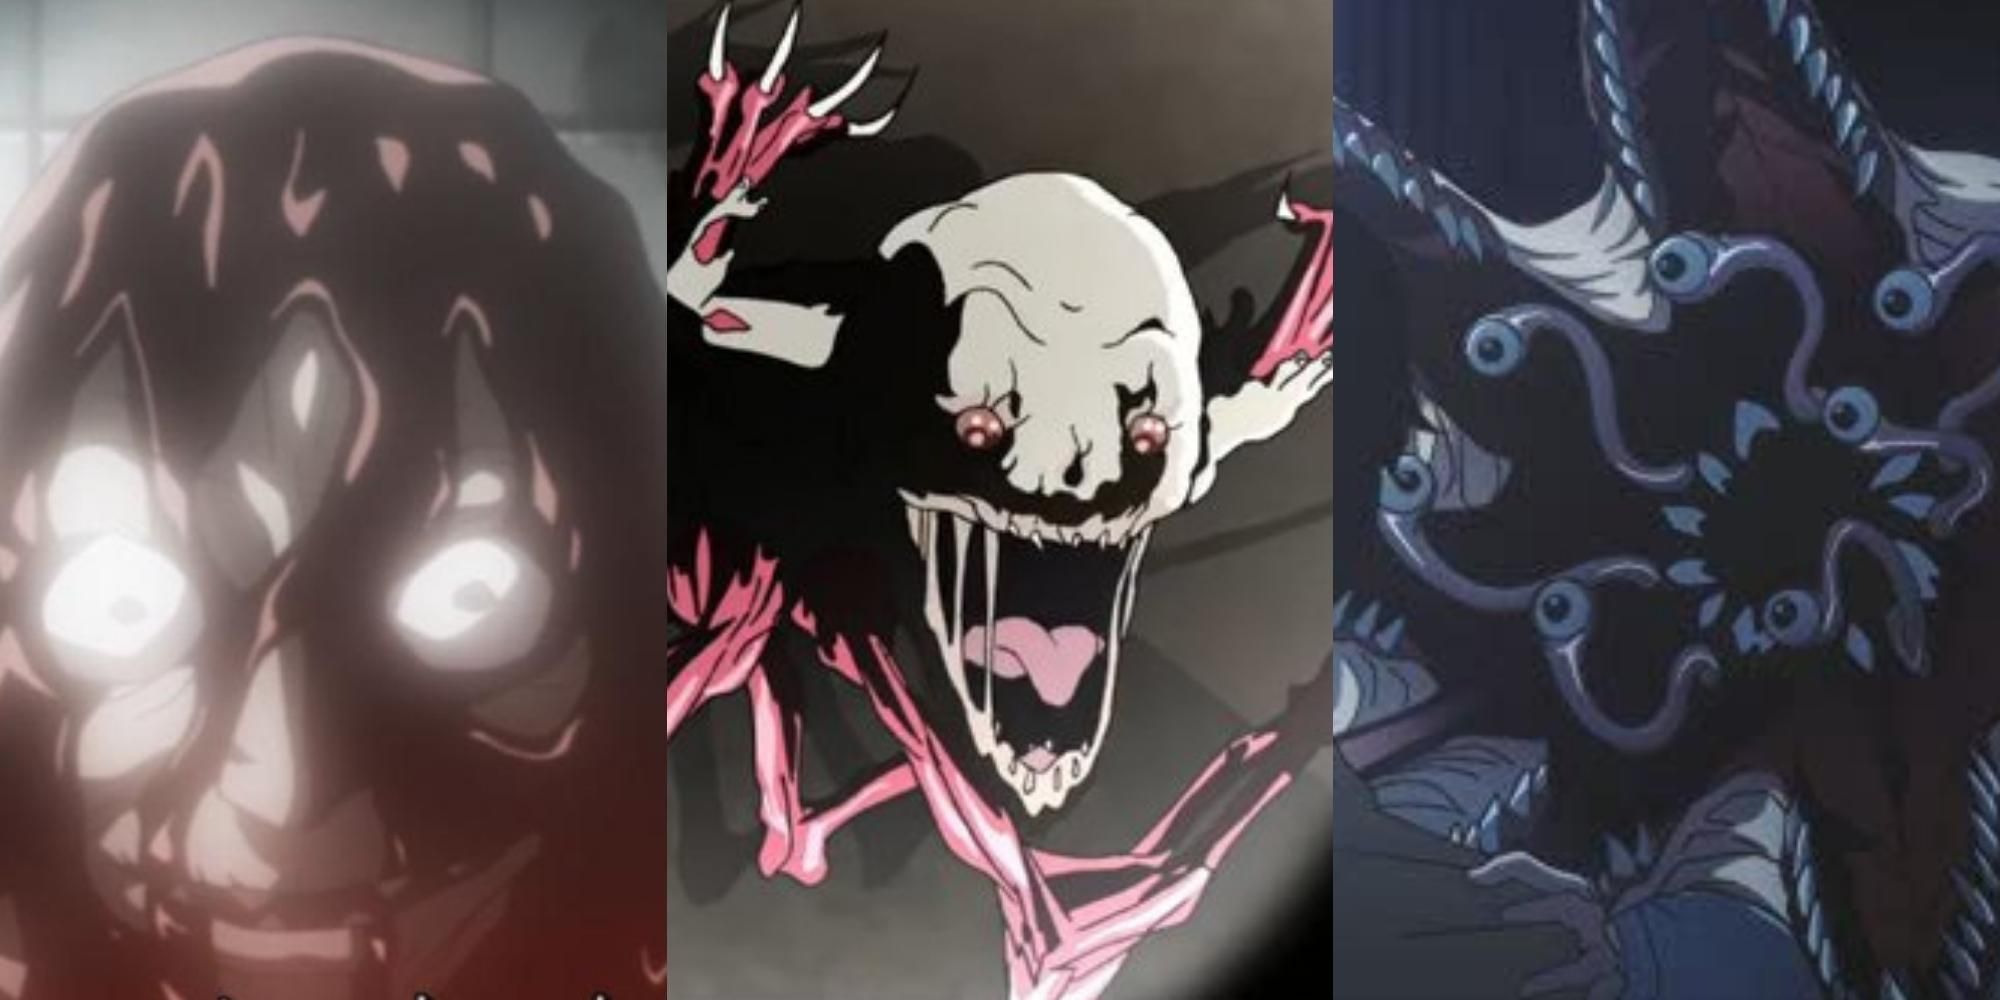 Monster wallpaper | Anime monsters, Anime character design, Aesthetic anime